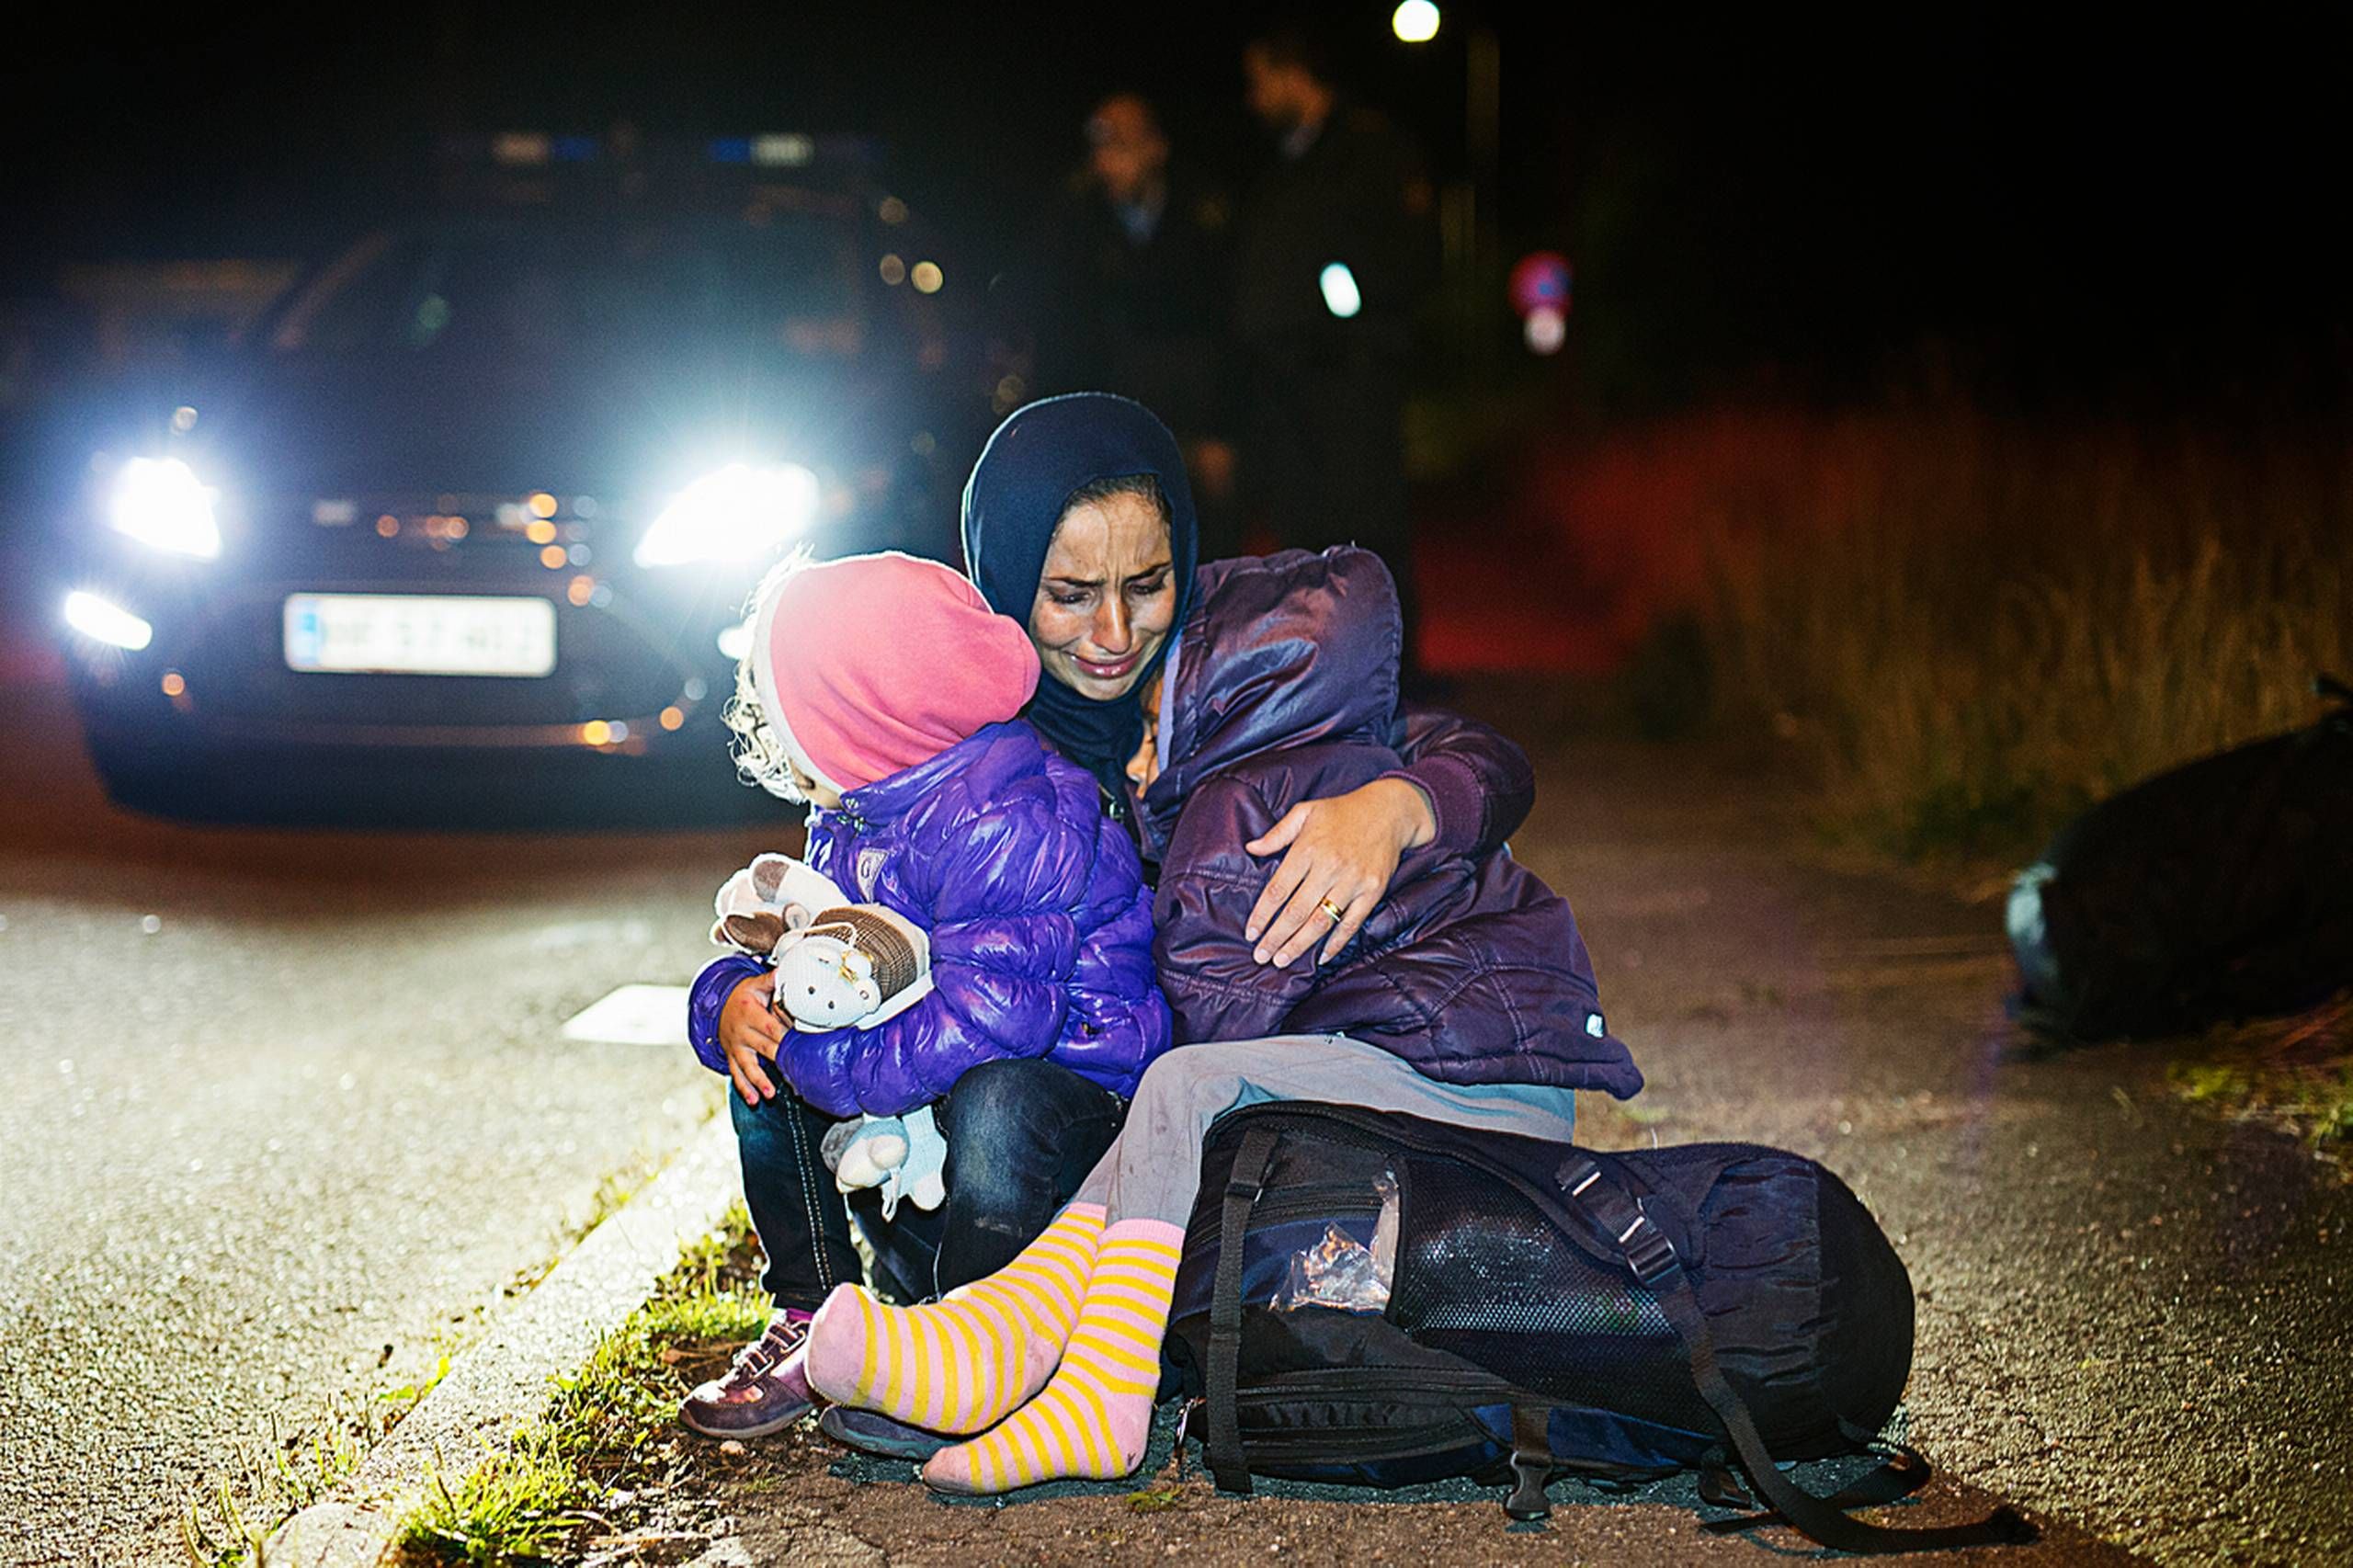 Politi nødhjælp til flygtninge: Vi tøj, bamser og mad i overflod